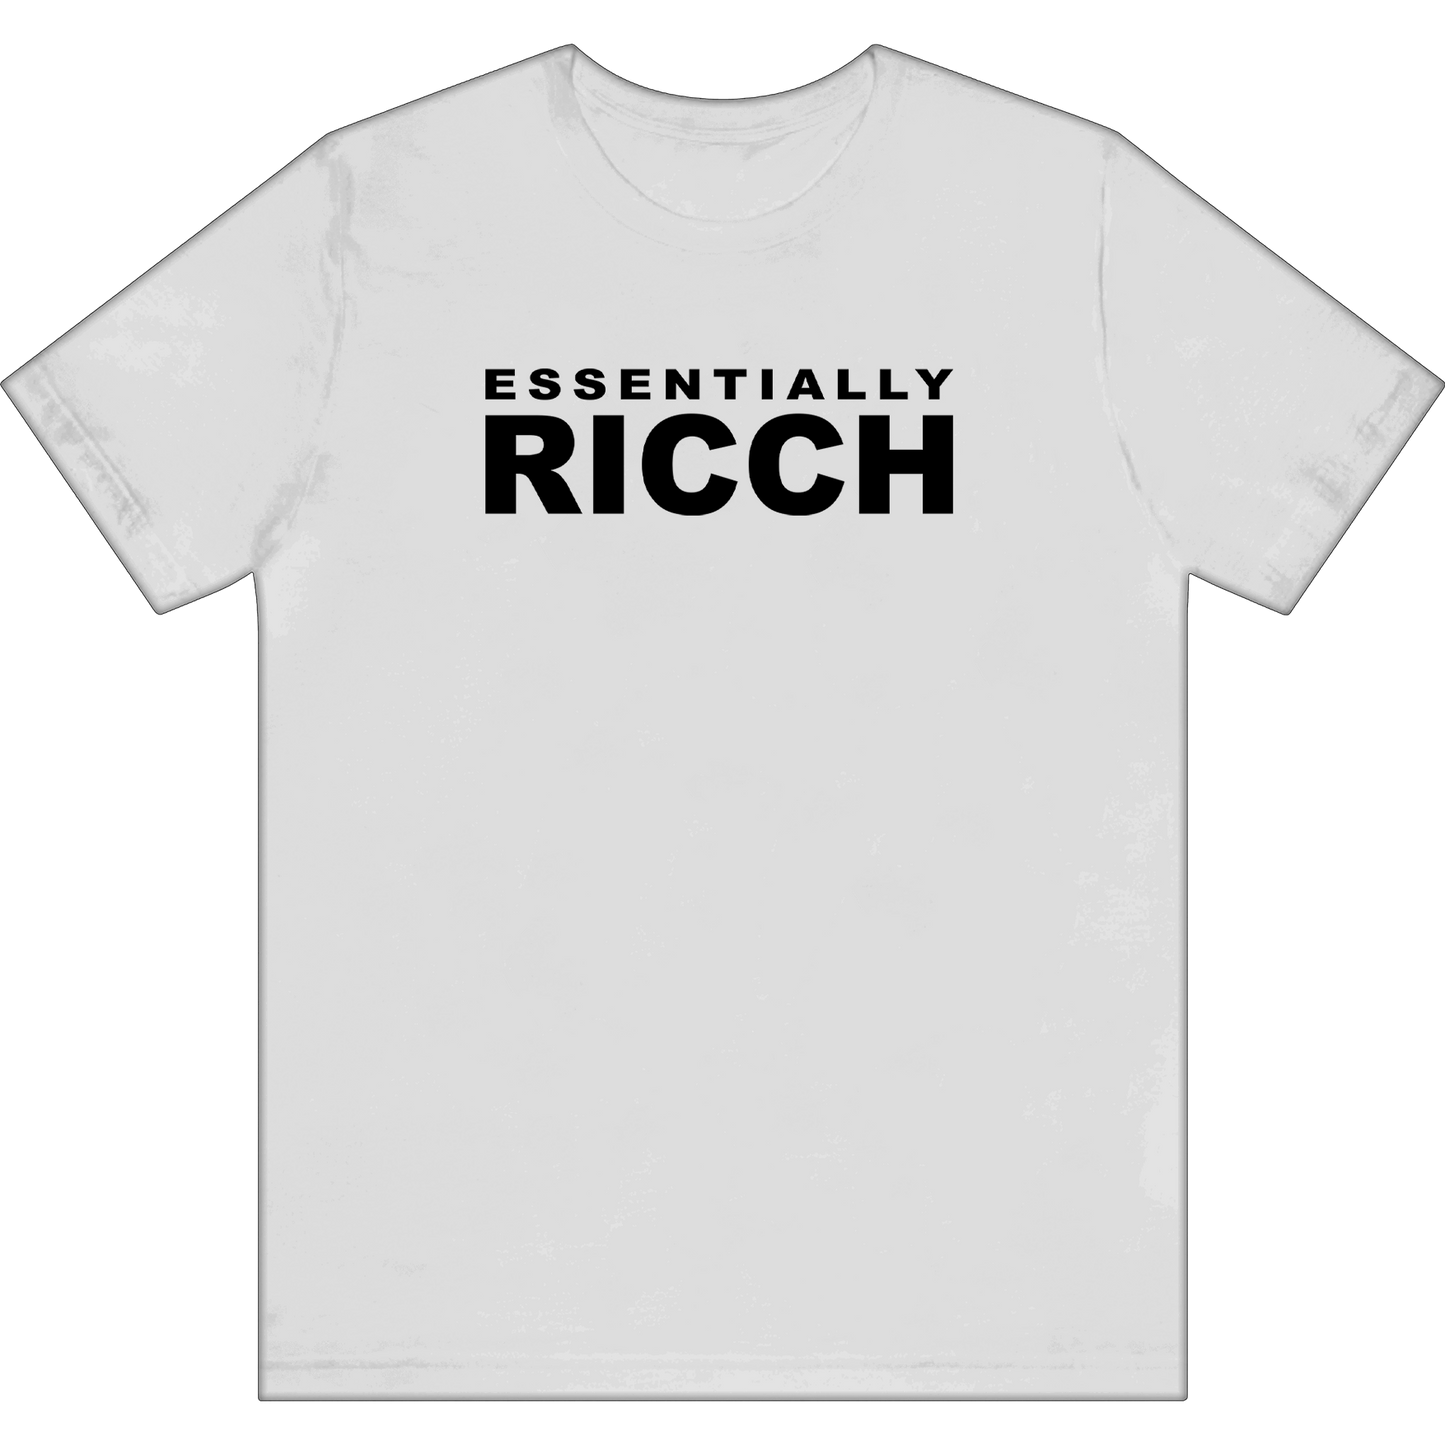 "Essentially RICCH"